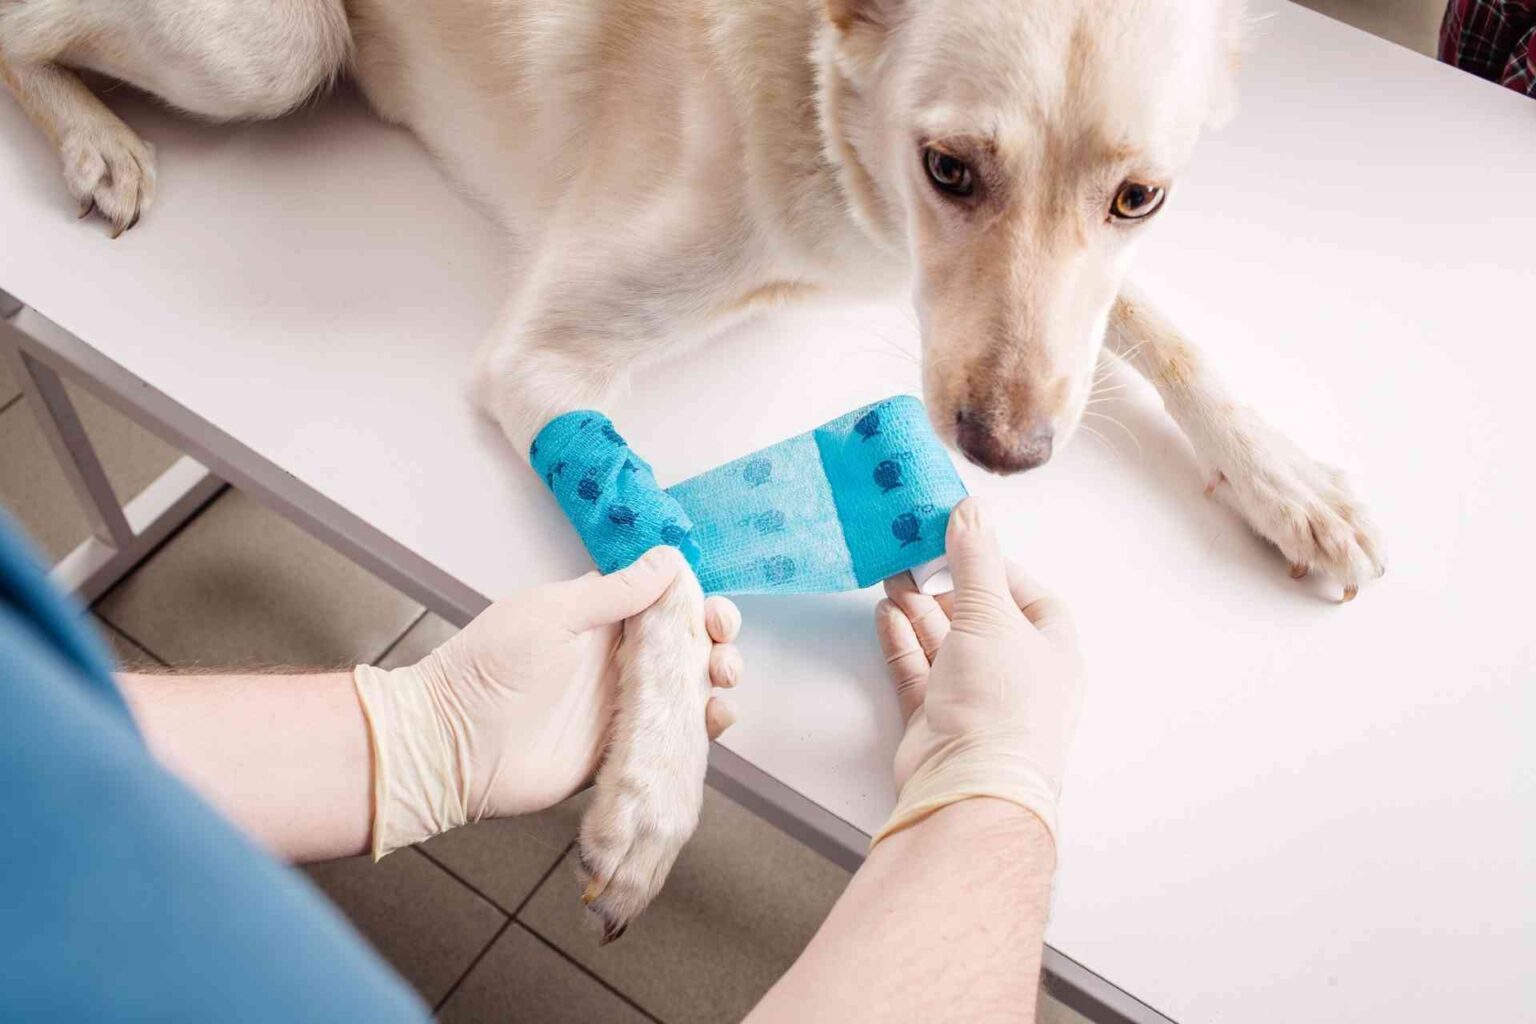 Valutare e trattare le ferite in ambito veterinario